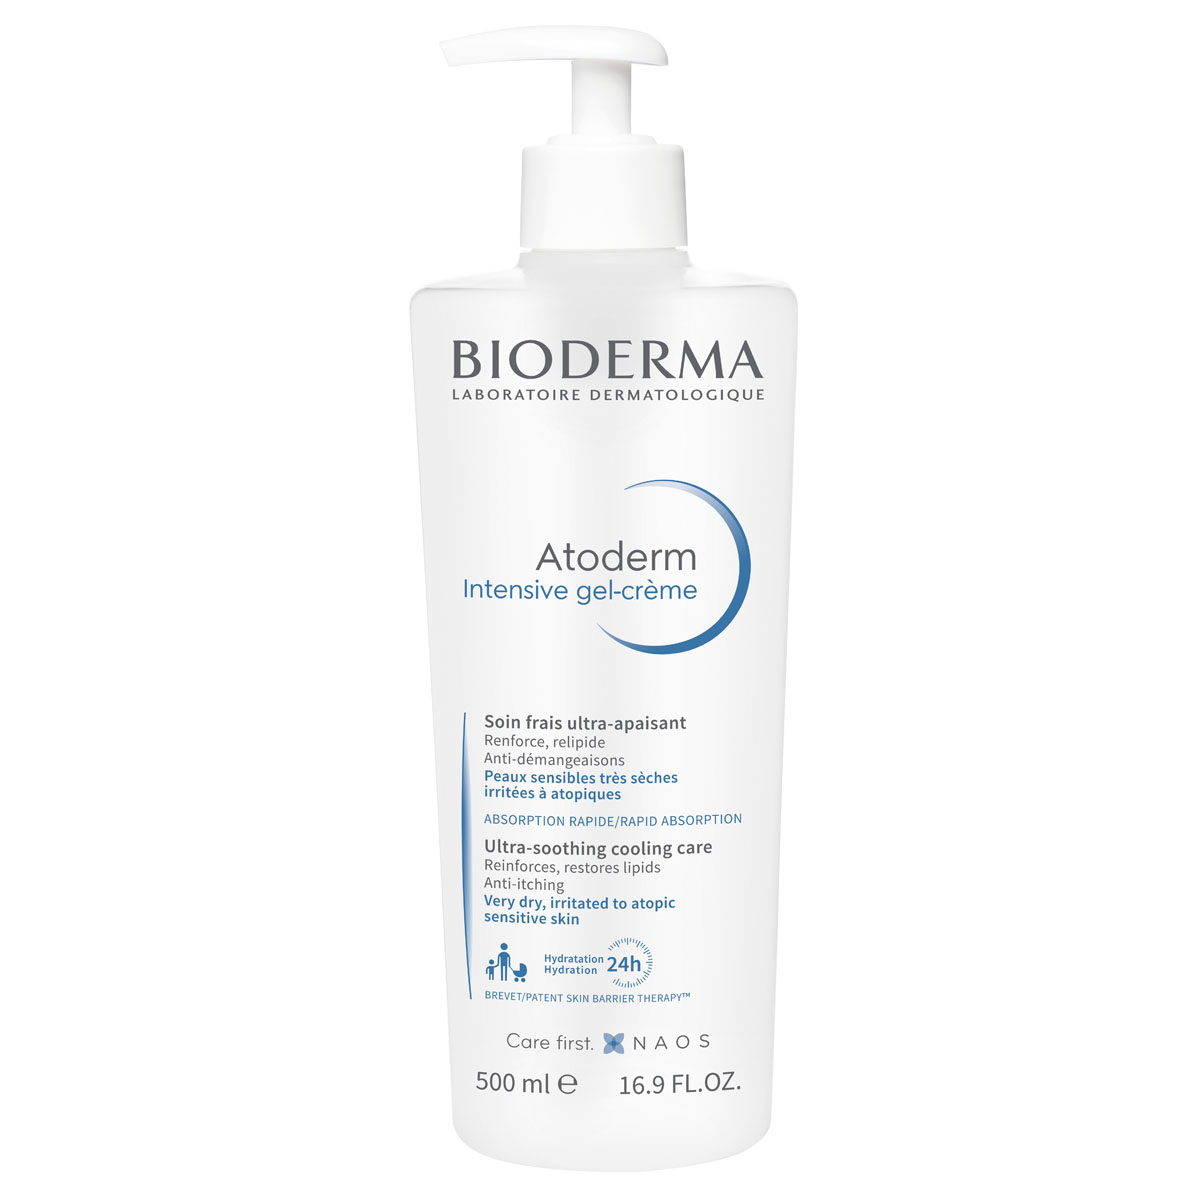 гель для лица bioderma успокаивающий гель крем для сухой раздраженной и атопичной кожи лица и тела atoderm Bioderma Гель-крем Интенсив, 500 мл (Bioderma, Atoderm)